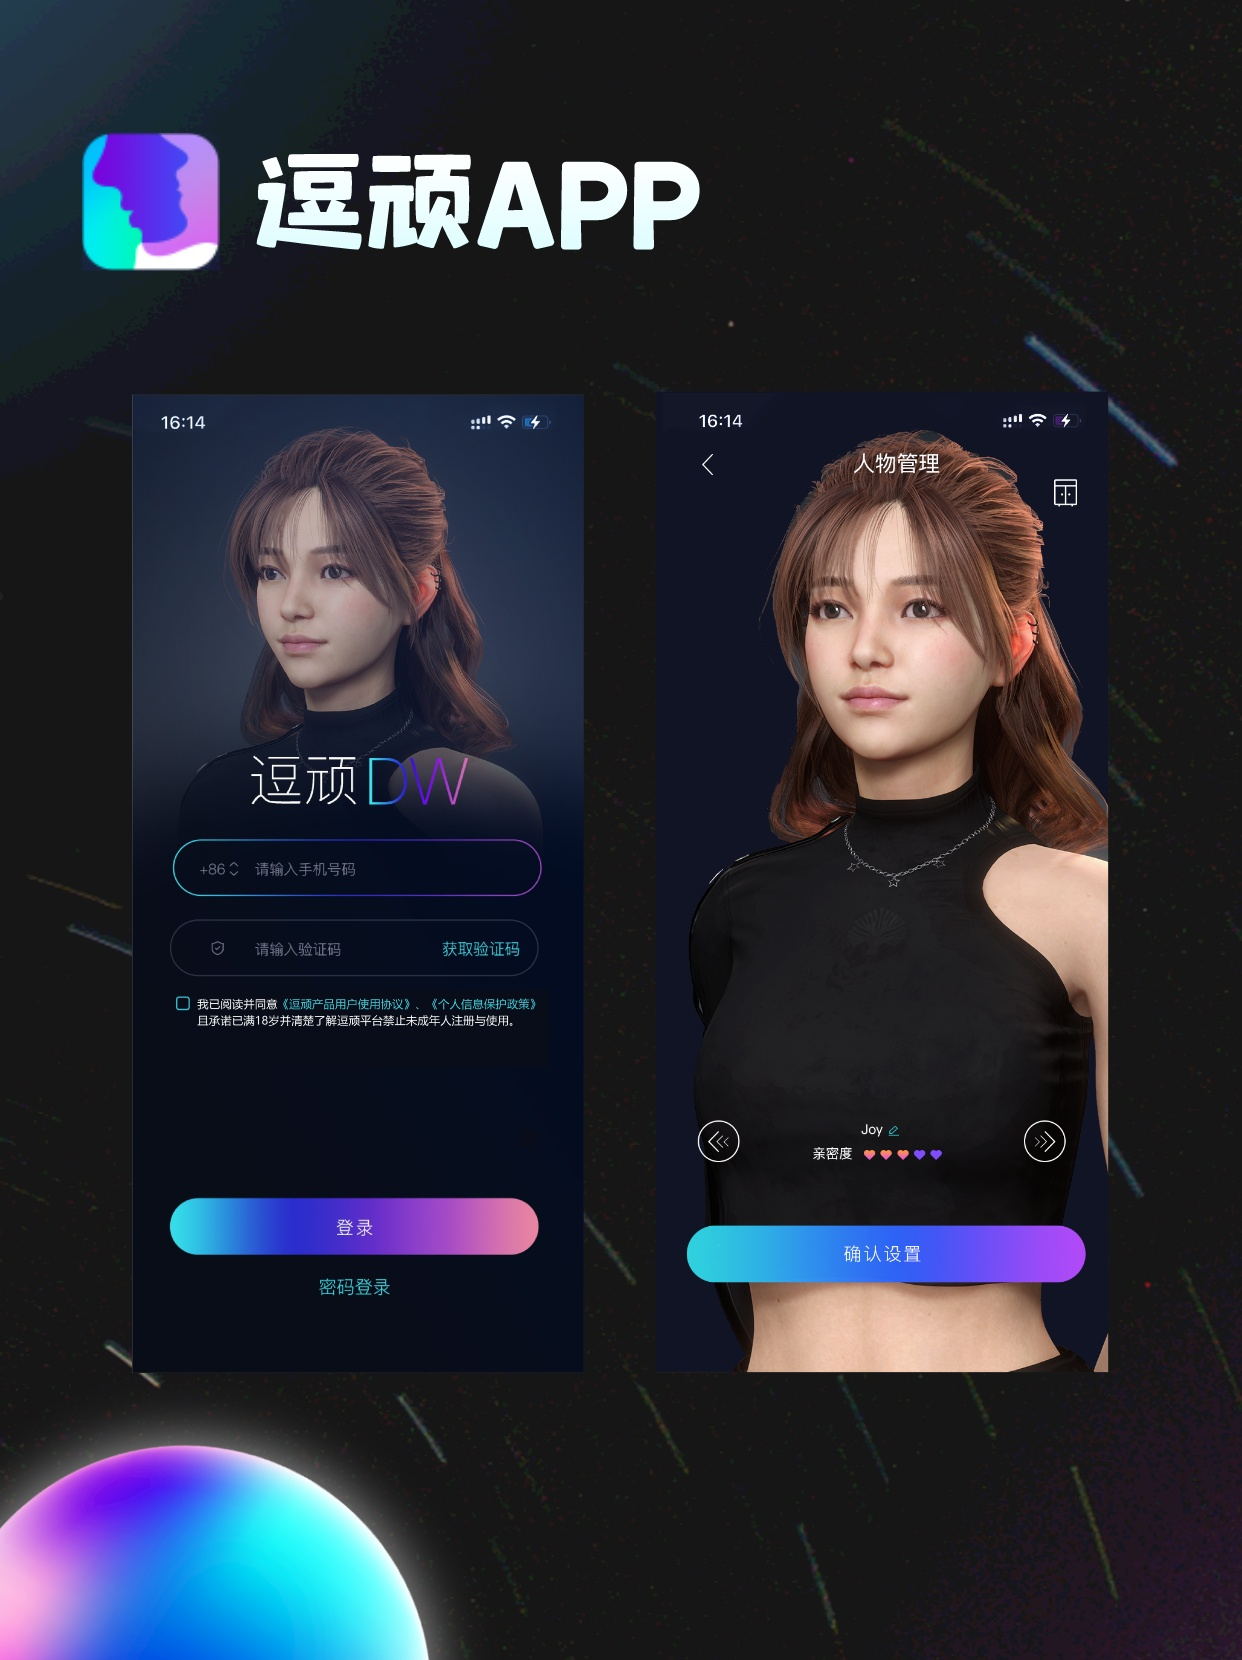 重庆海葵科技有限公司倾心打造的逗顽app现已正式上线!